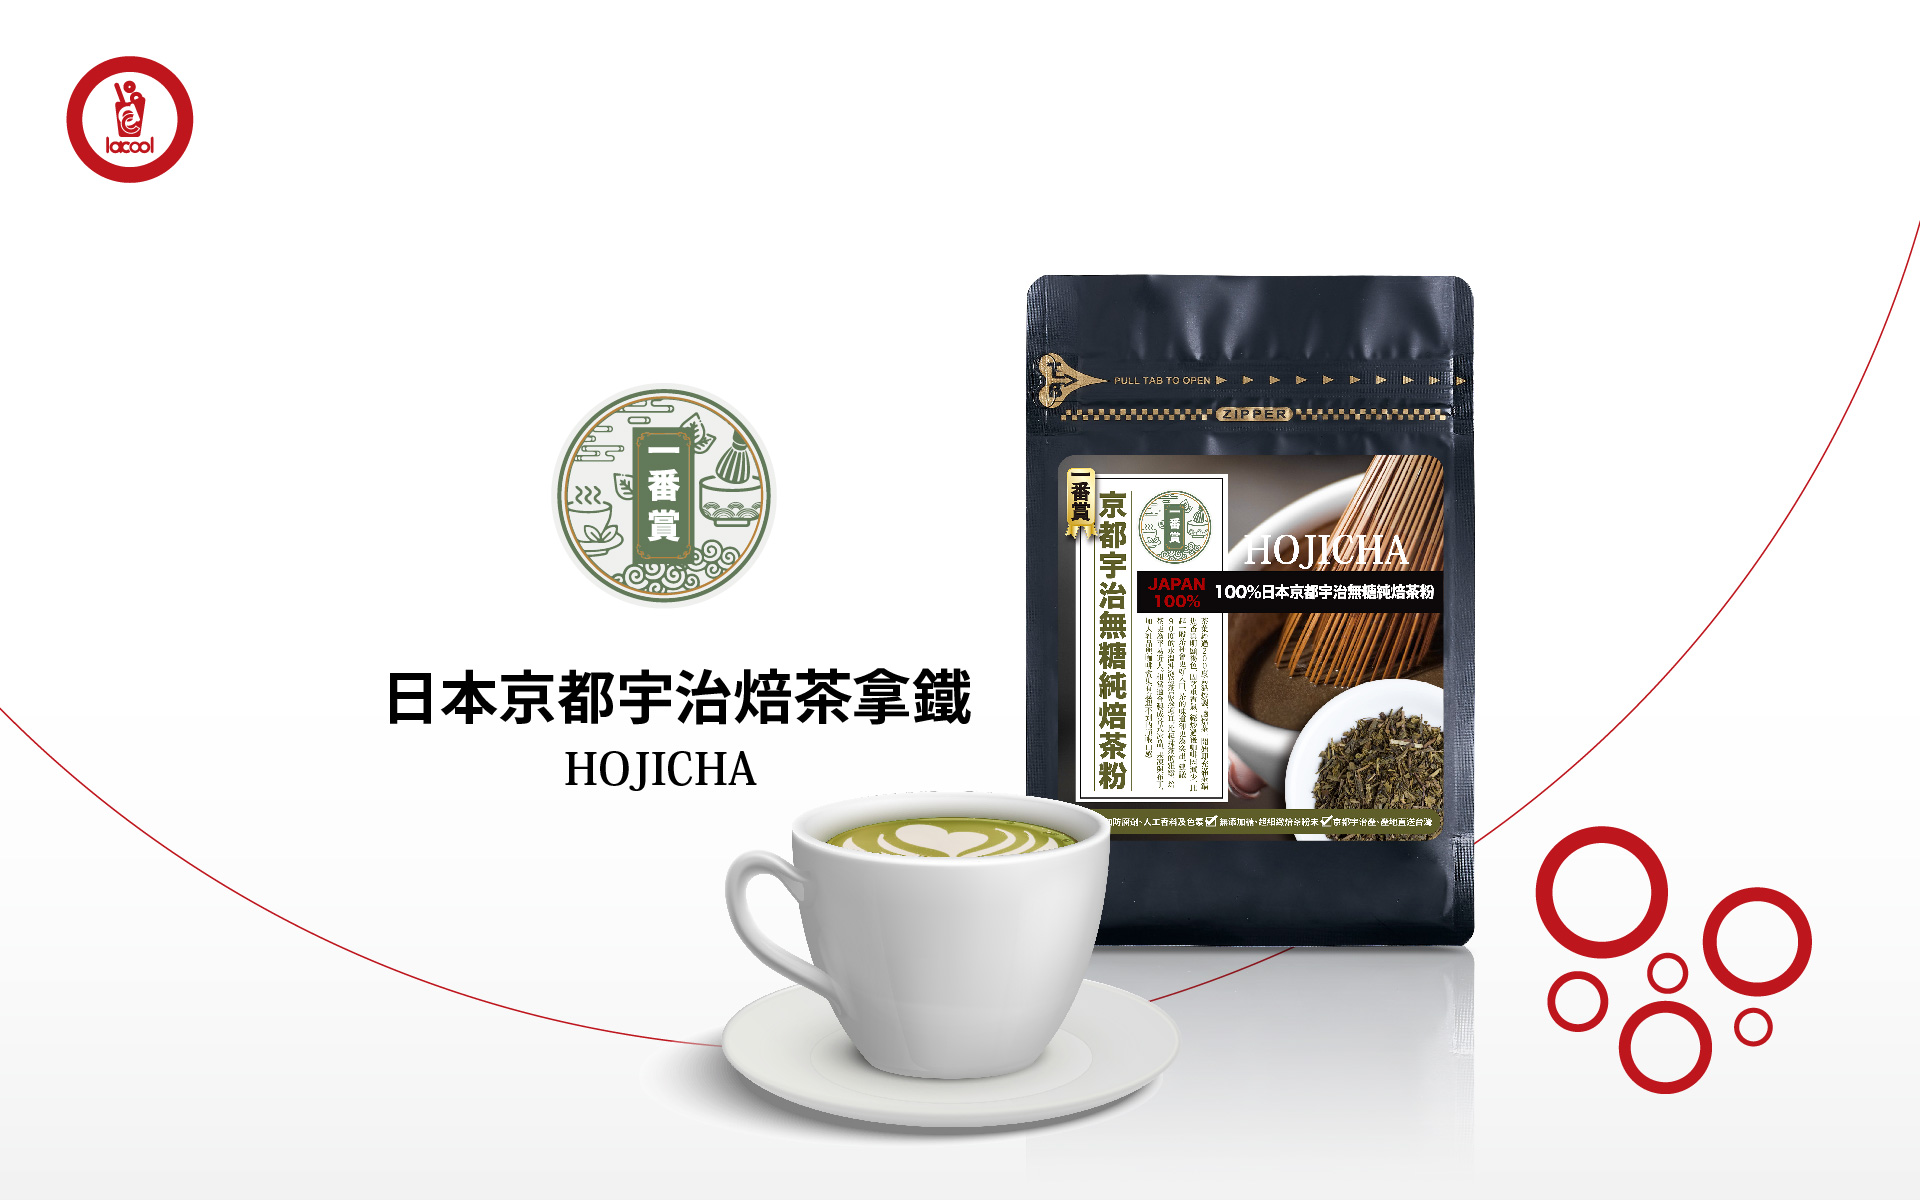 【關於焙茶的各式喝法】-一番賞「100%日本京都宇治無糖純焙茶粉」